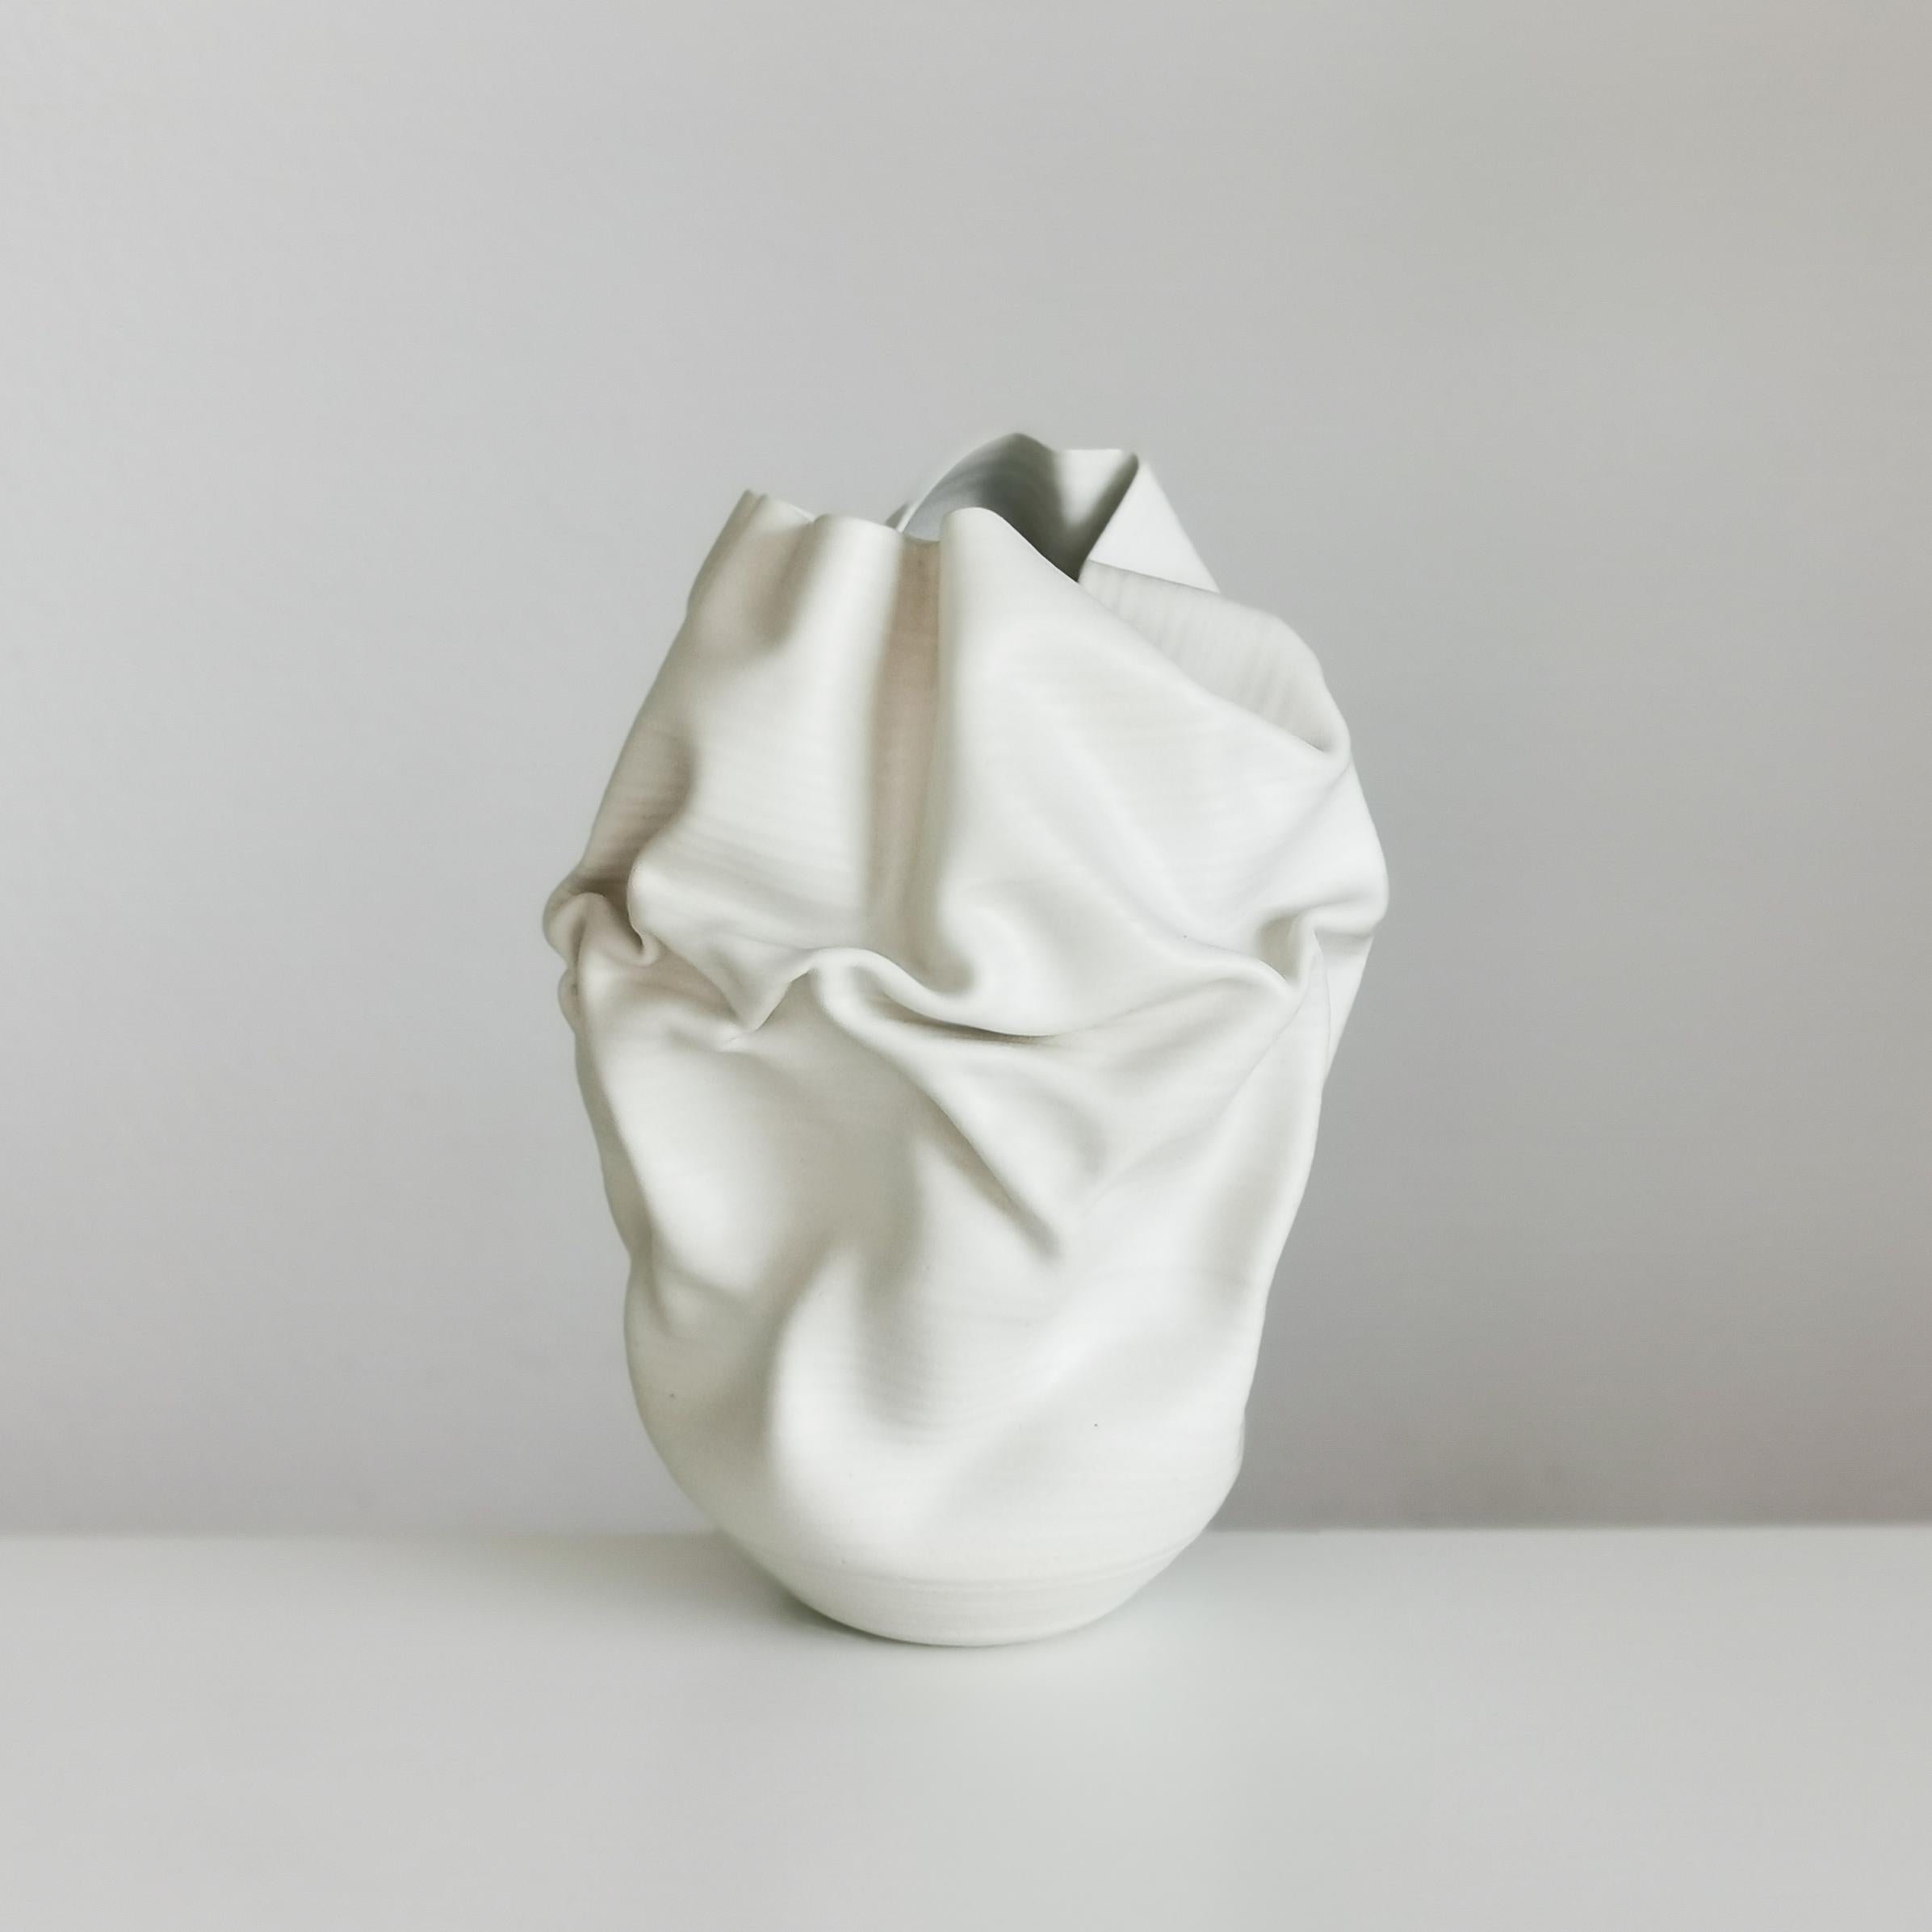 Medium Tall White Undulating Crumpled Form, Unique Ceramic Sculpture Vessel N.51 2